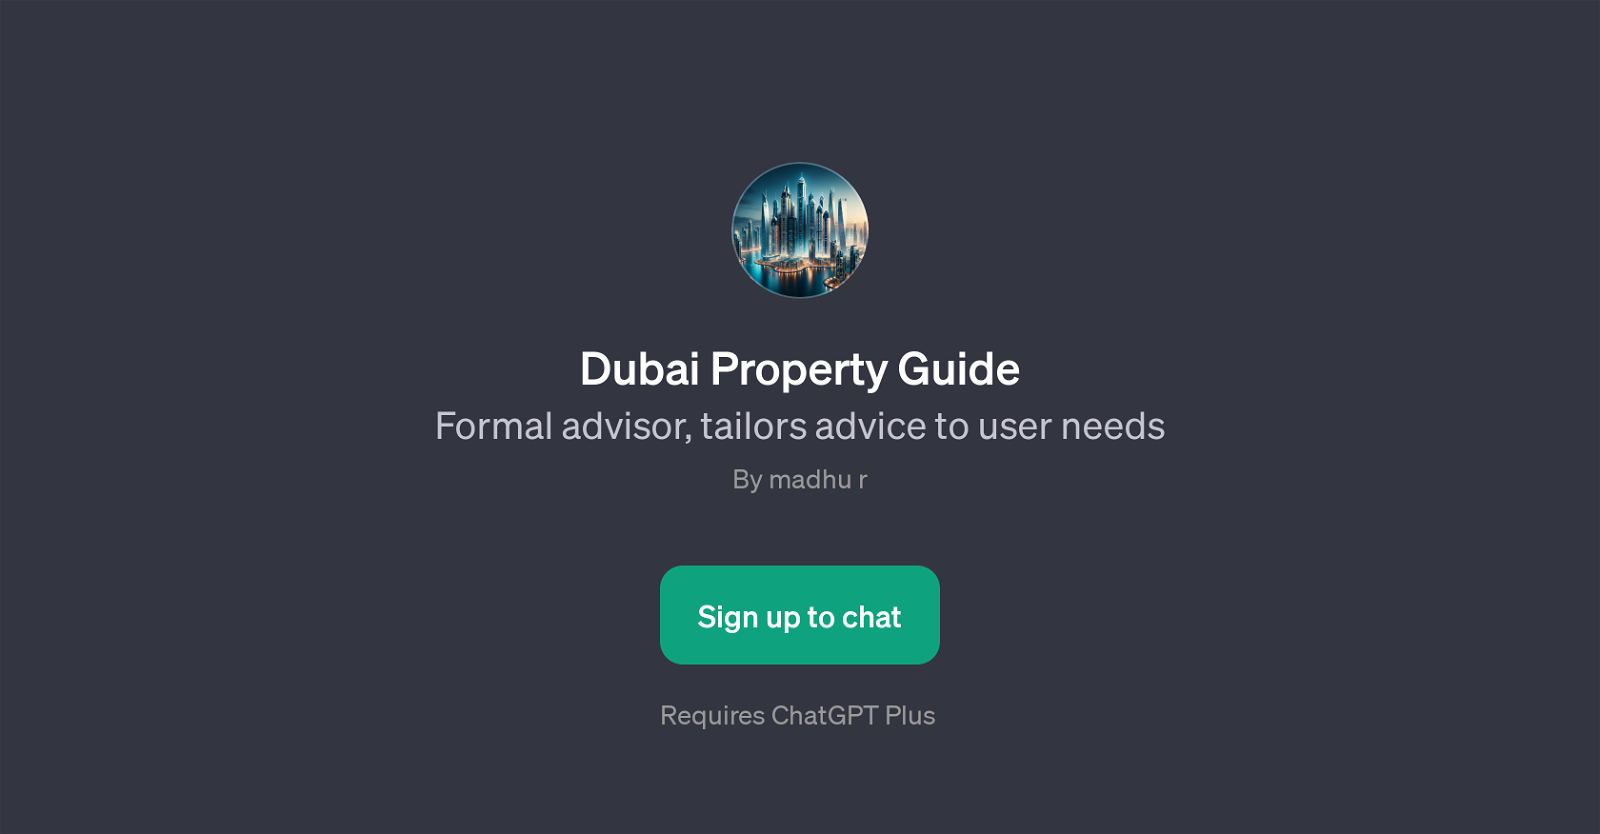 Dubai Property Guide website